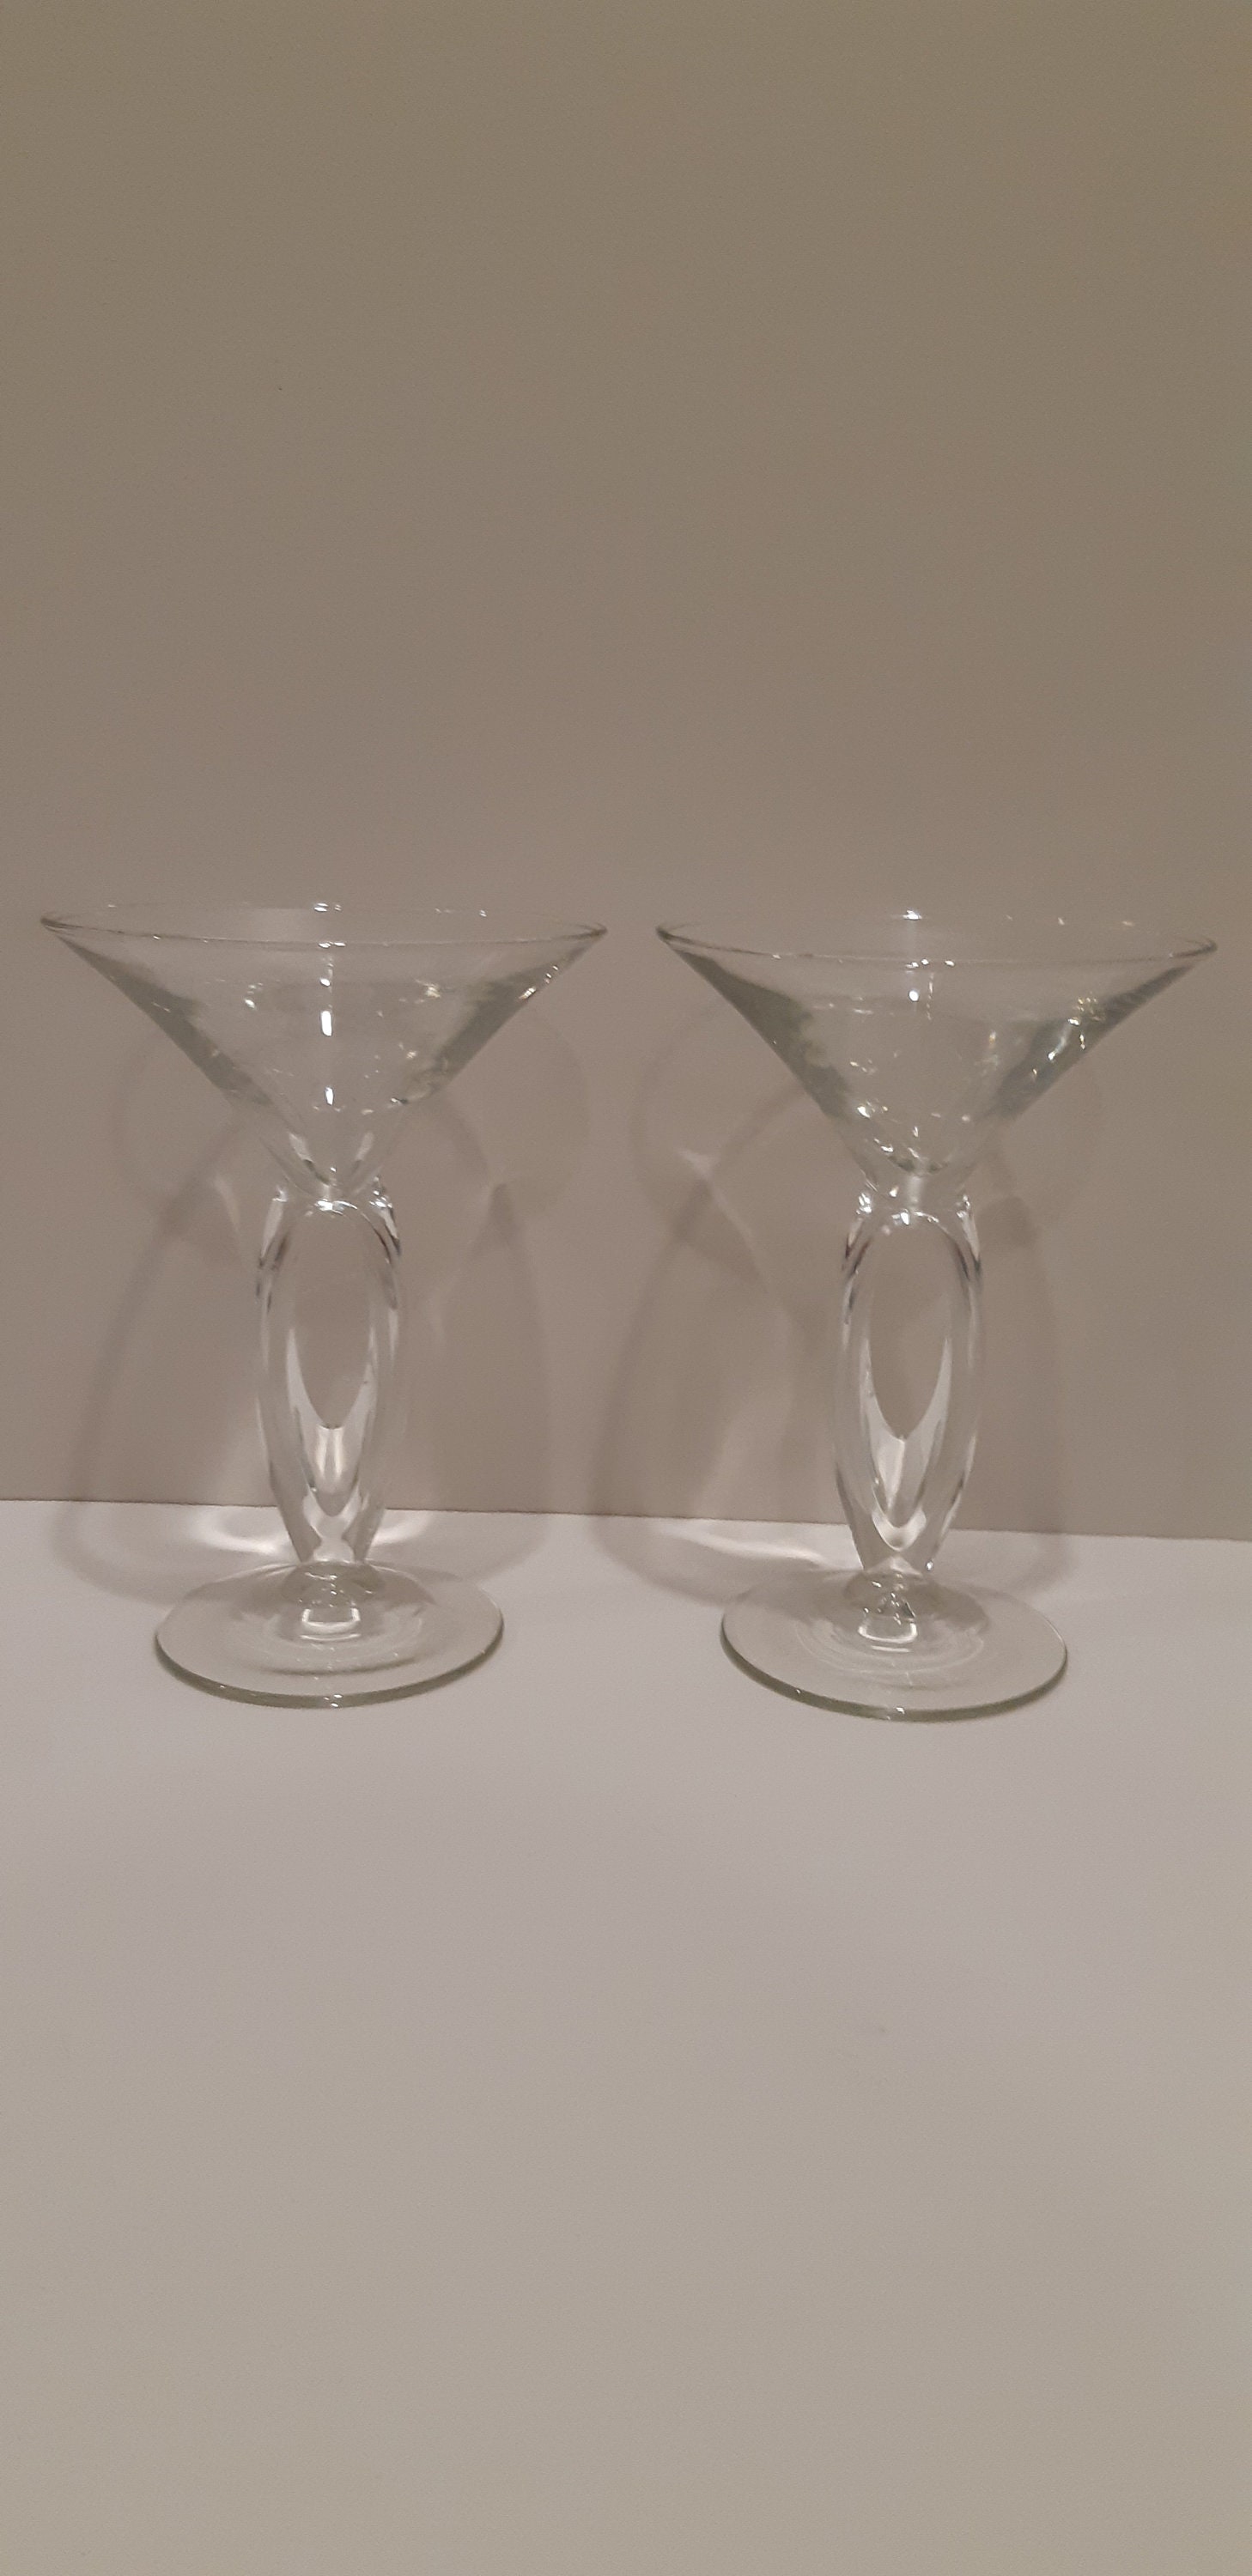 wookgreat Stemless Martini Glasses, Set of 6 Vintage Cocktail Glasses, 8oz  Crystal Margarita Glasses…See more wookgreat Stemless Martini Glasses, Set